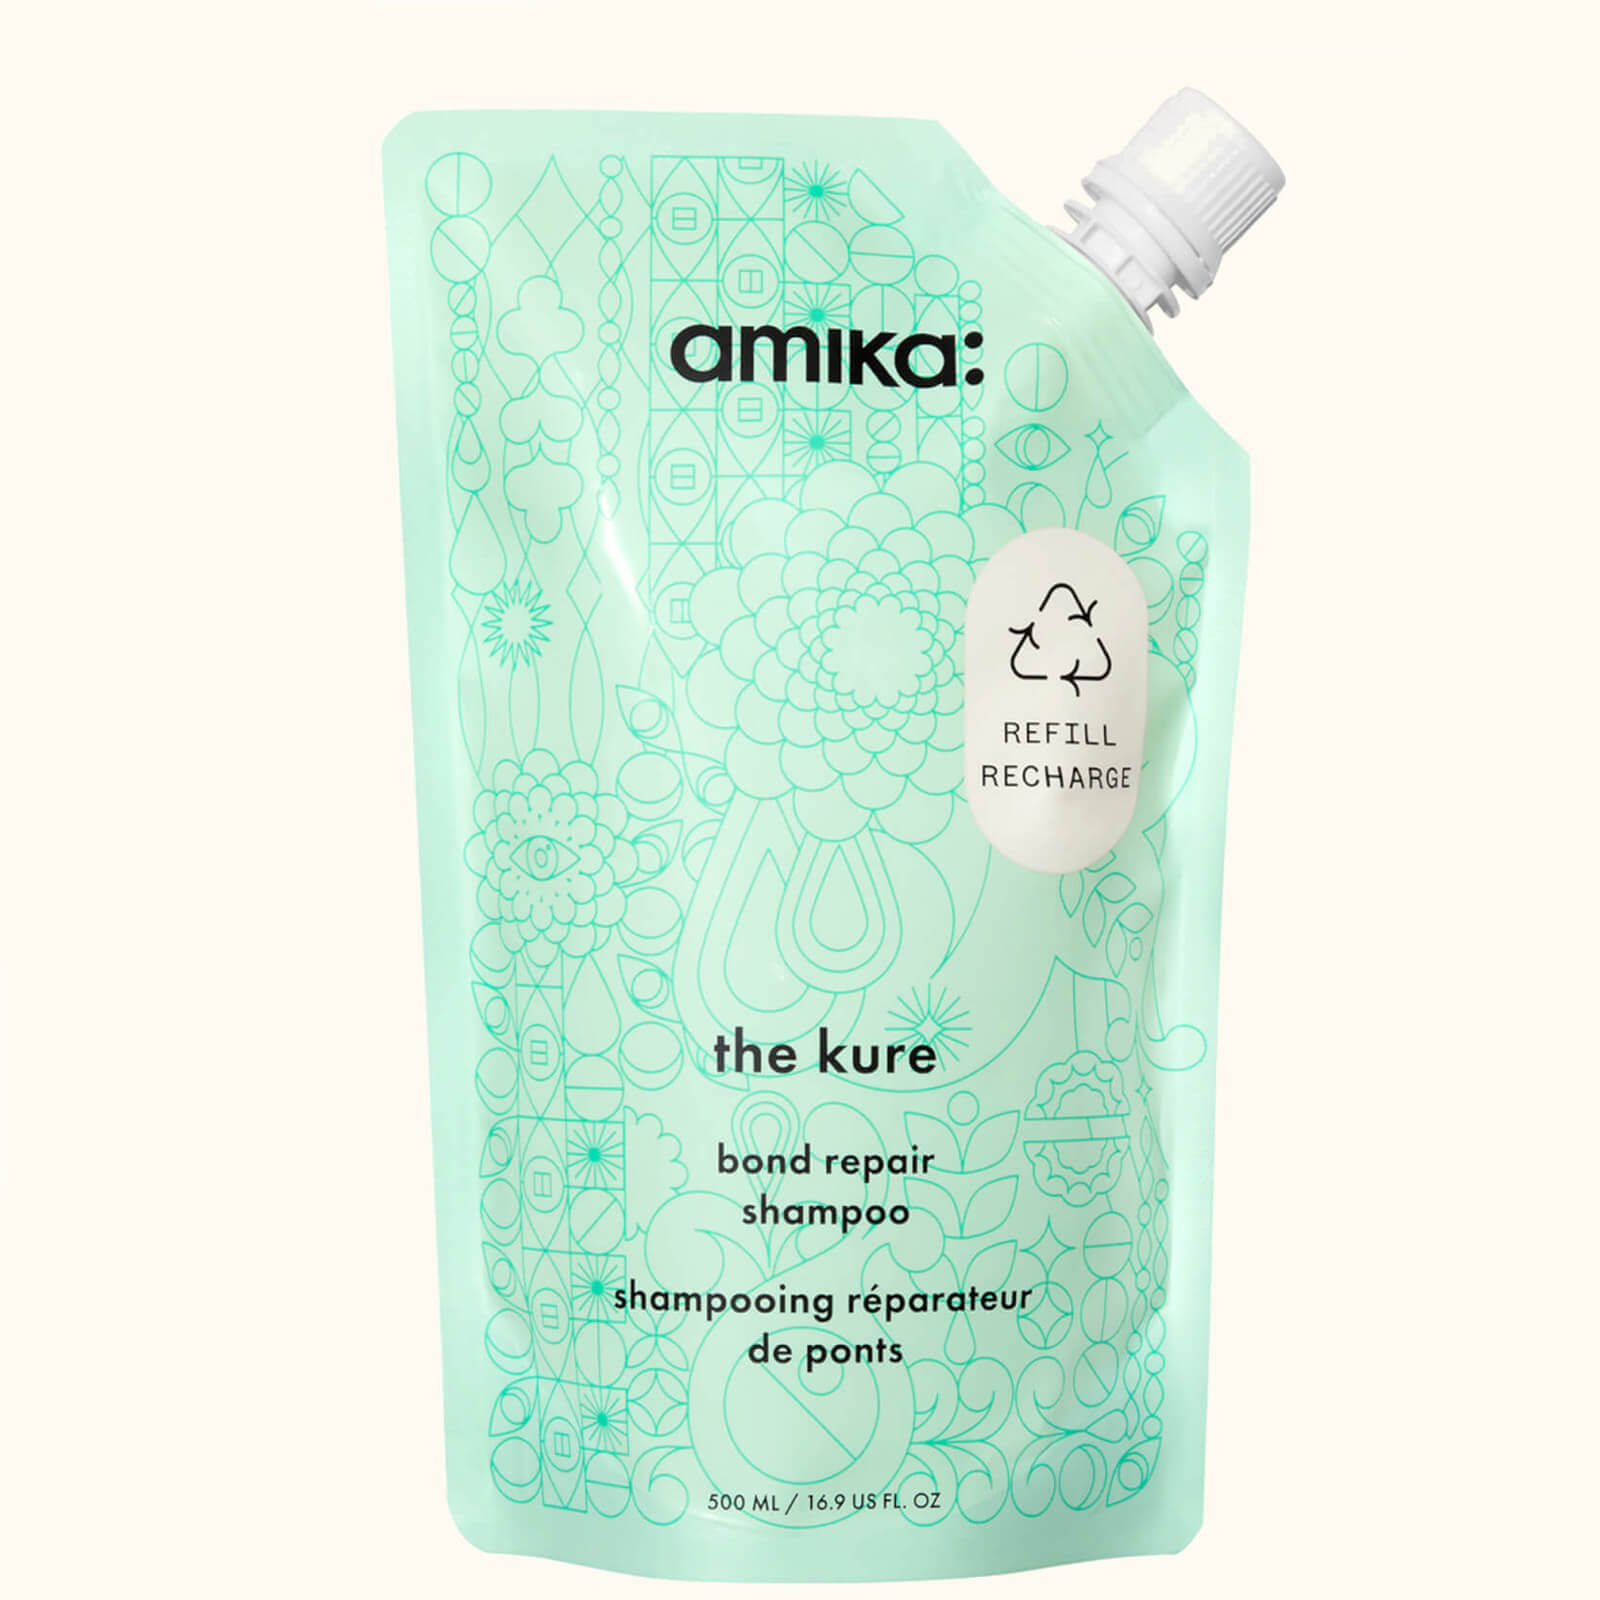 Photos - Hair Product Amika the kure bond repair shampoo - 500ml - Refill AM50.19257 